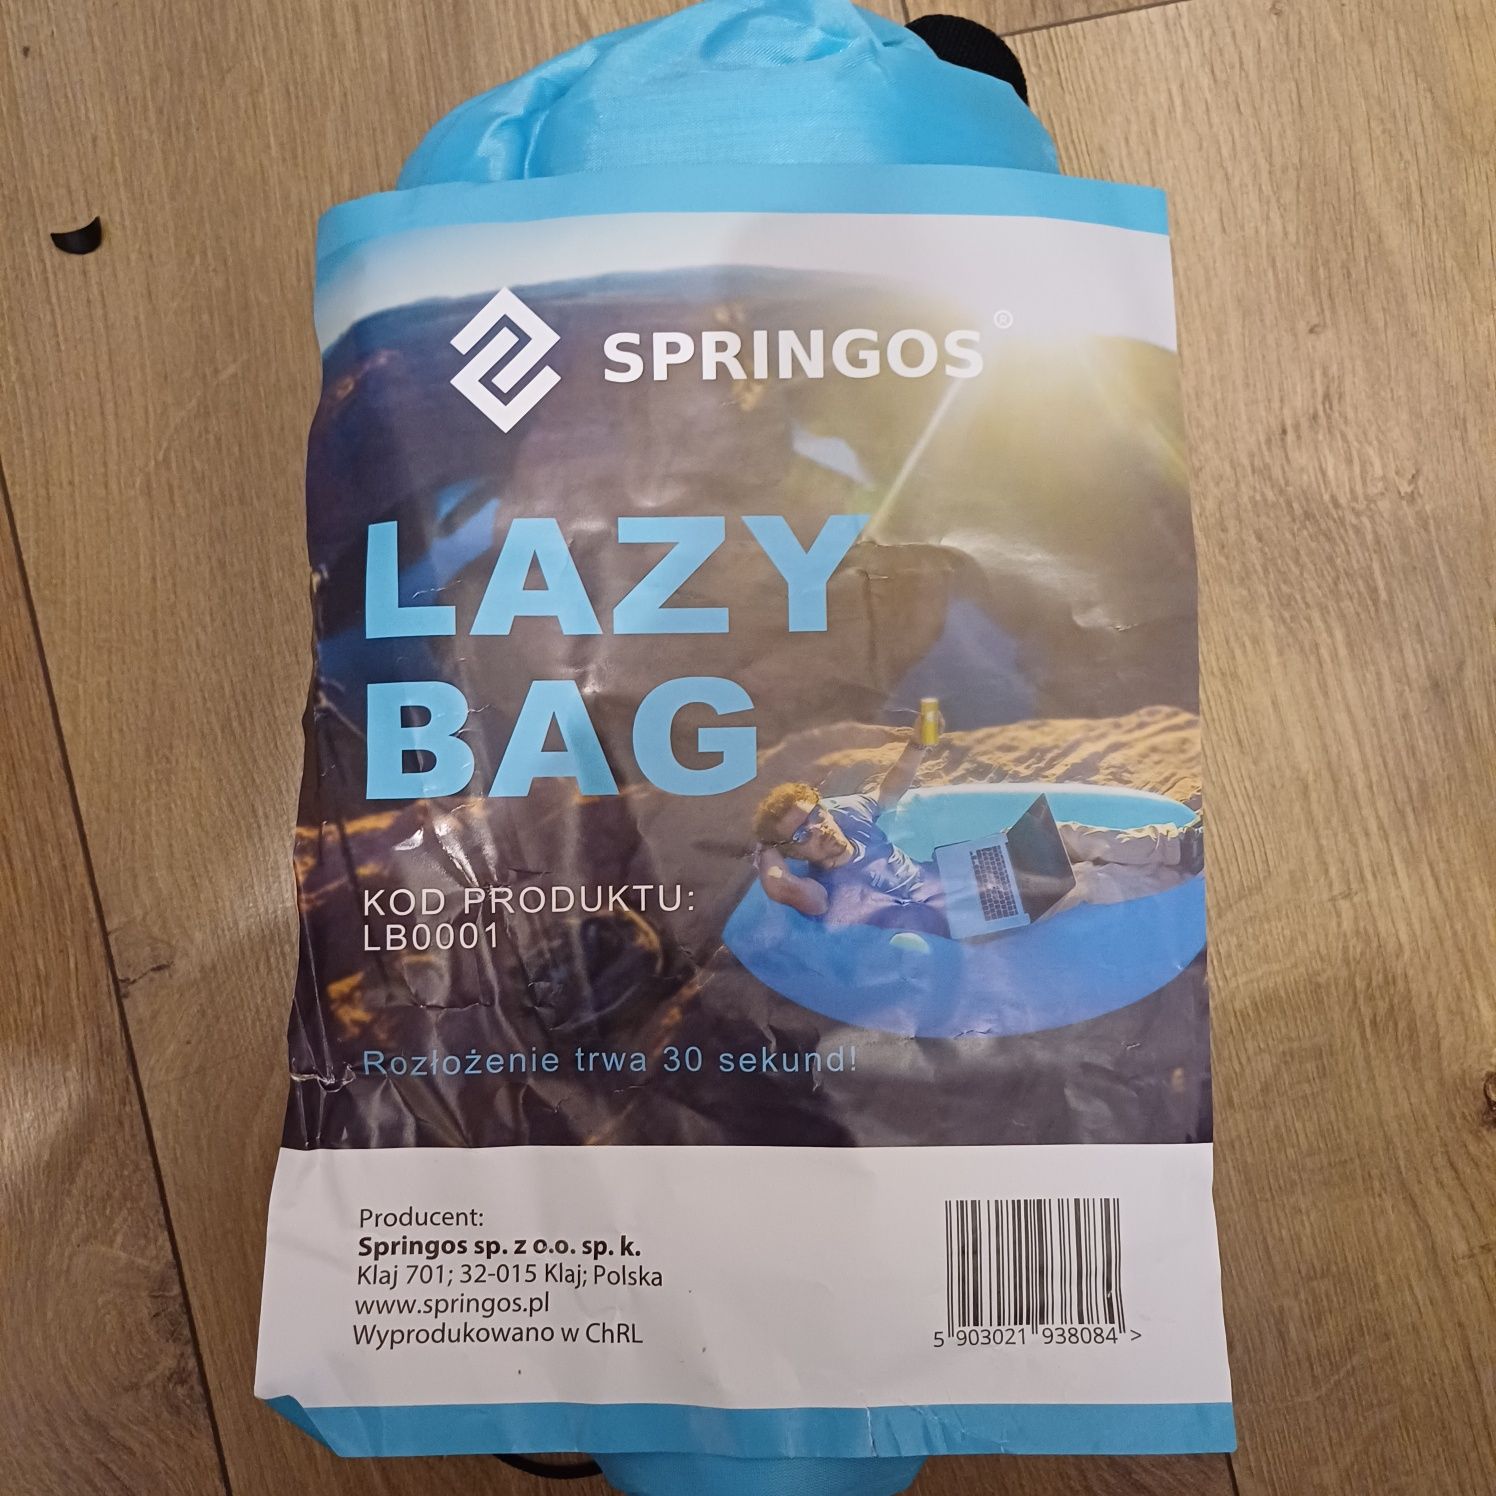 Sofa lazy bag springos